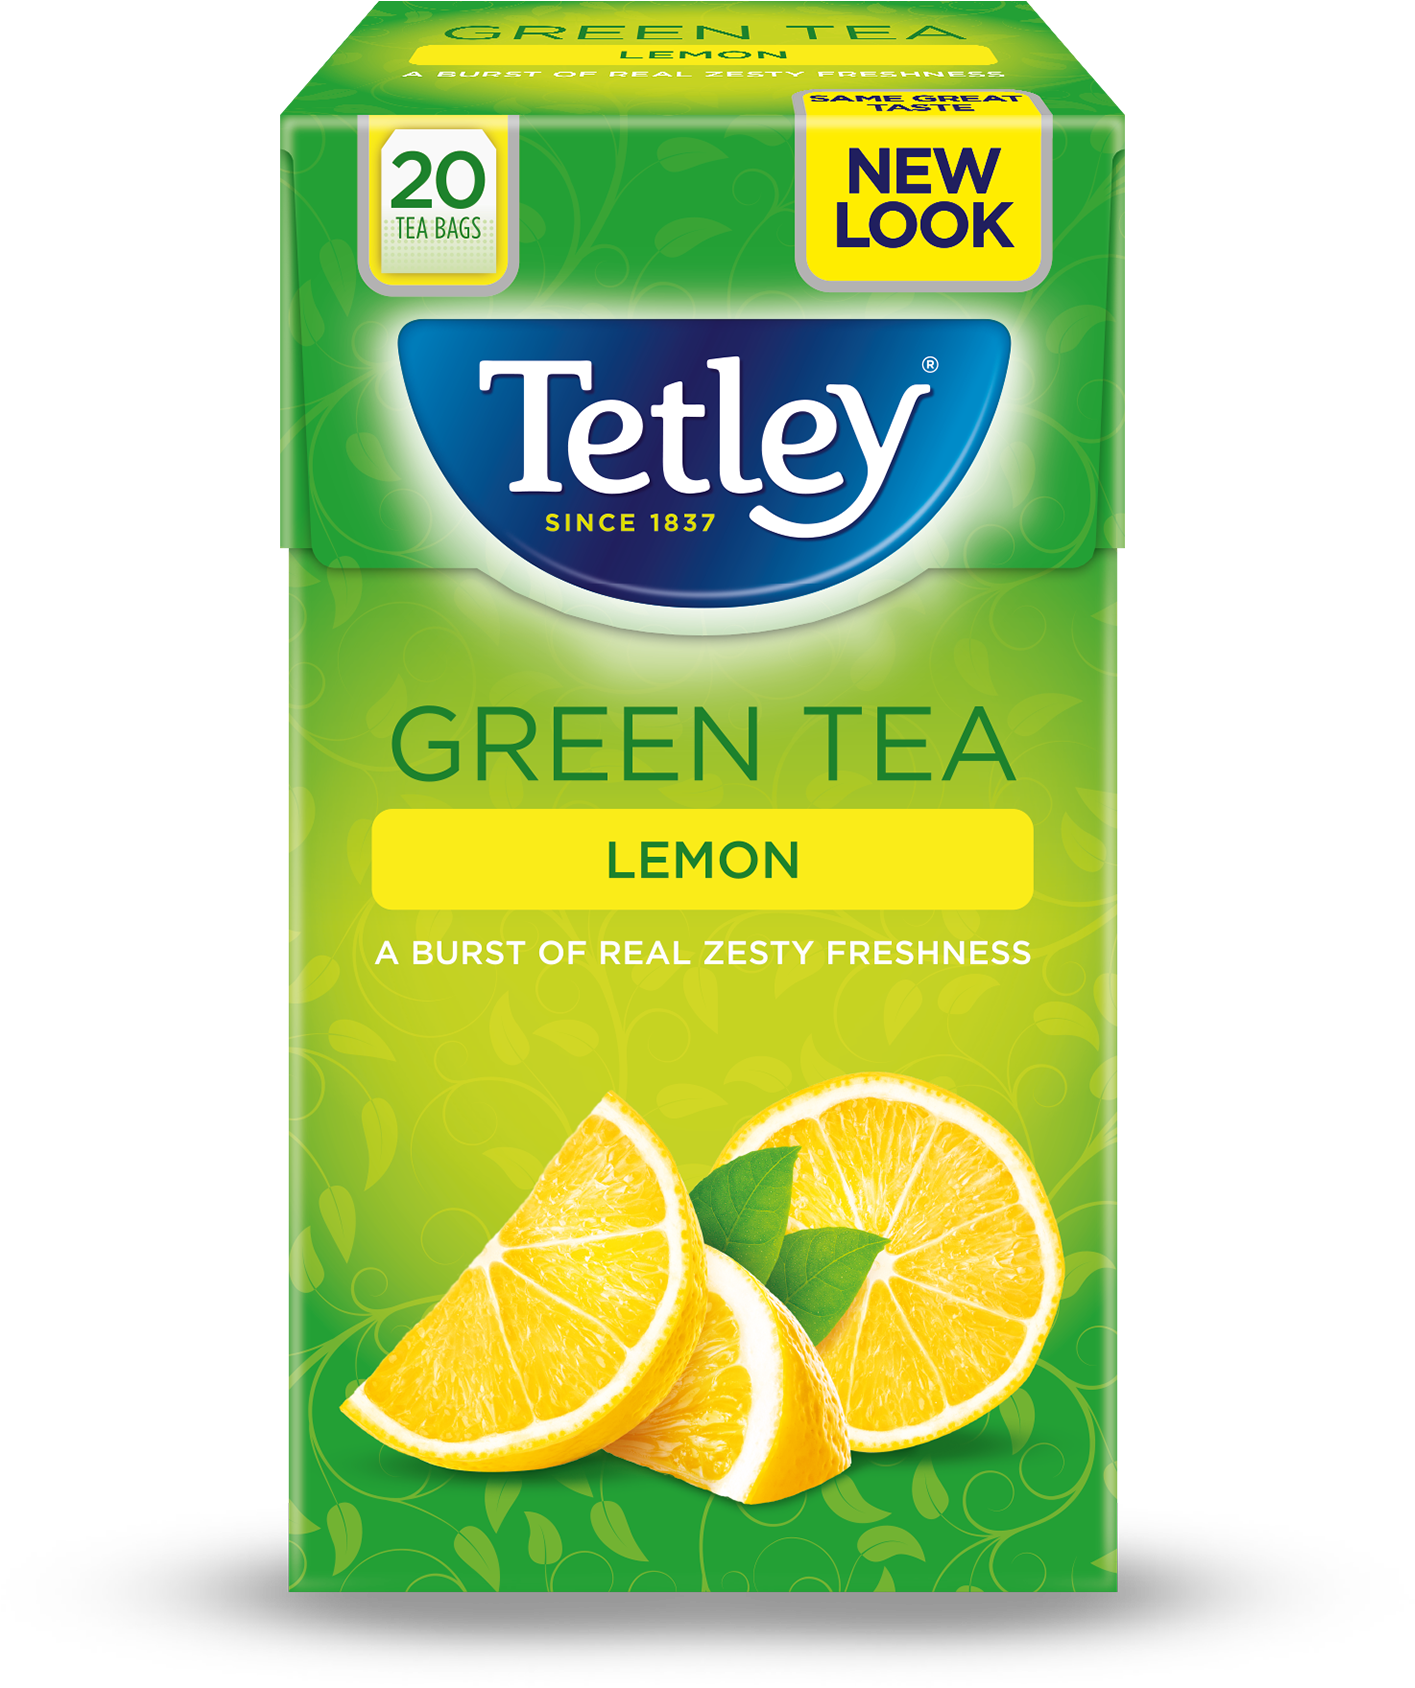 Tetley Lemon Green Tea Box PNG